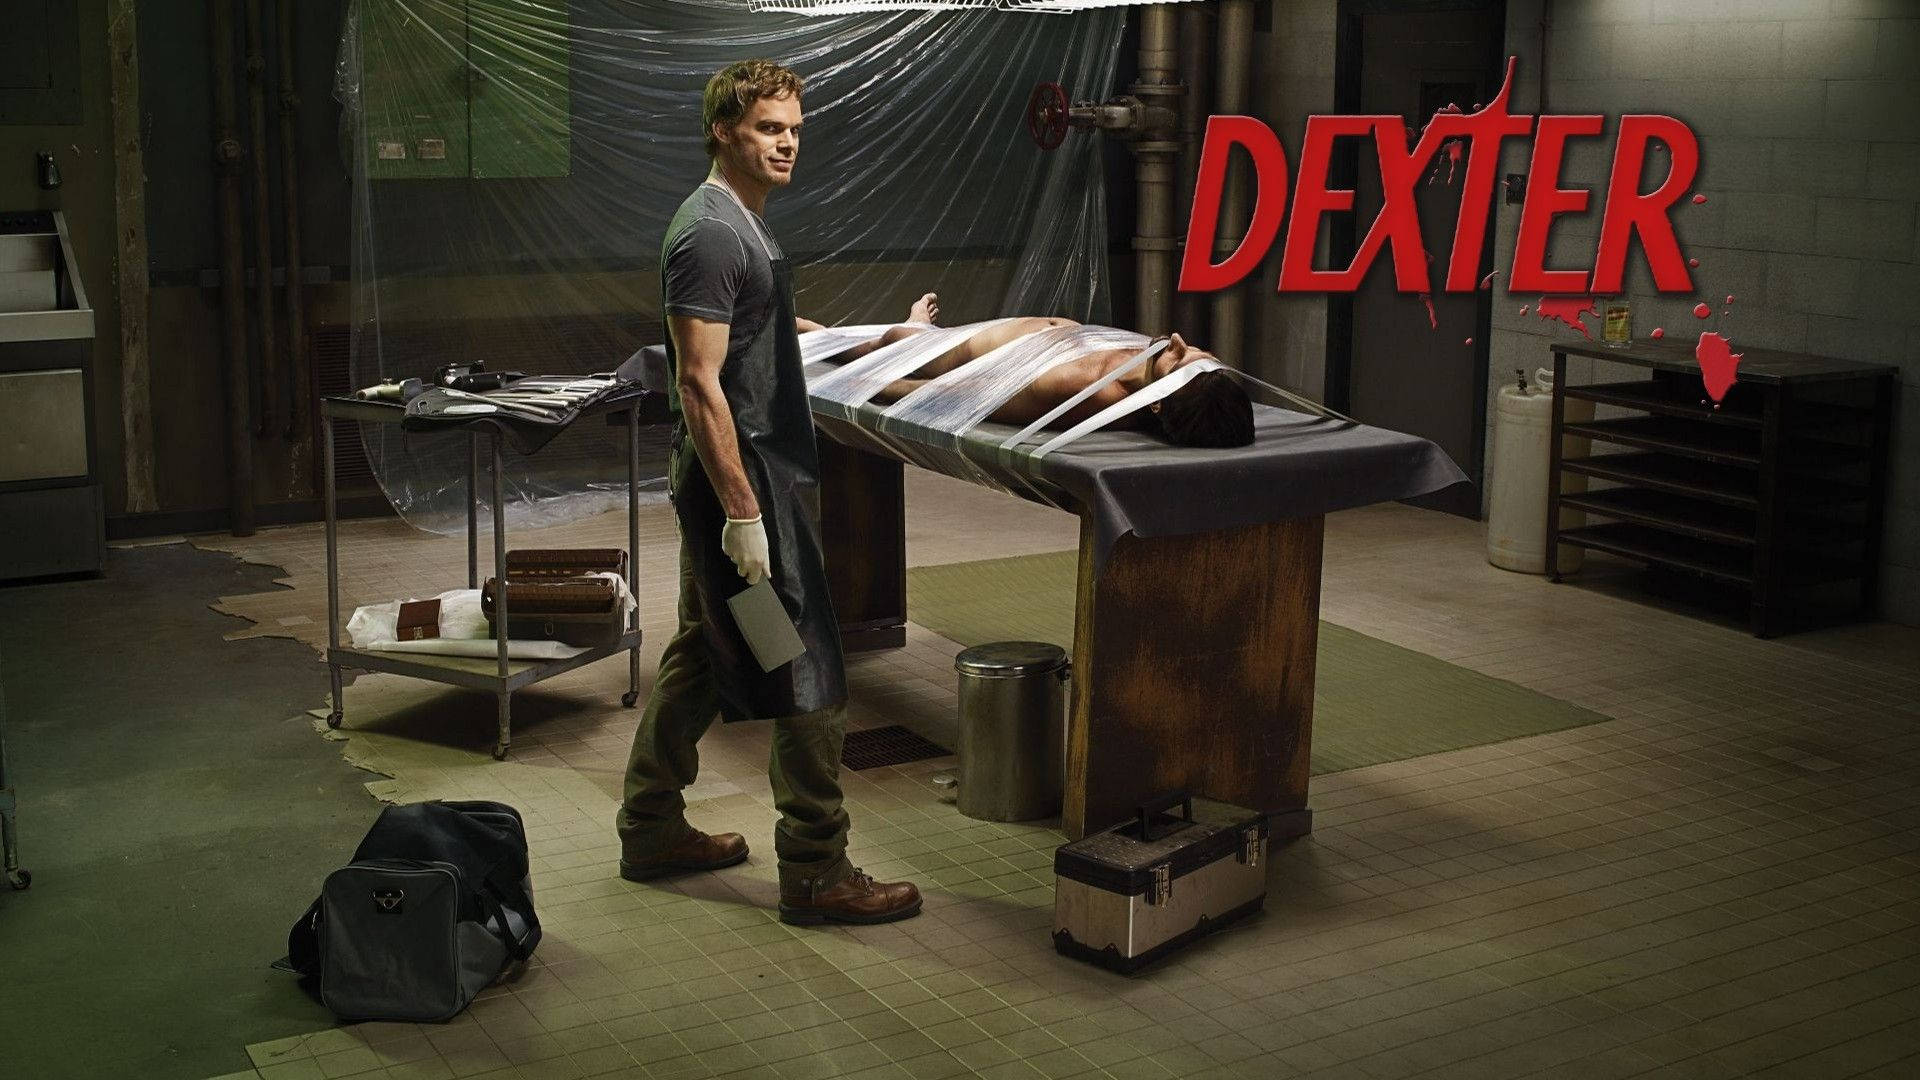 Dexter Scene Villain Holding Knife Background